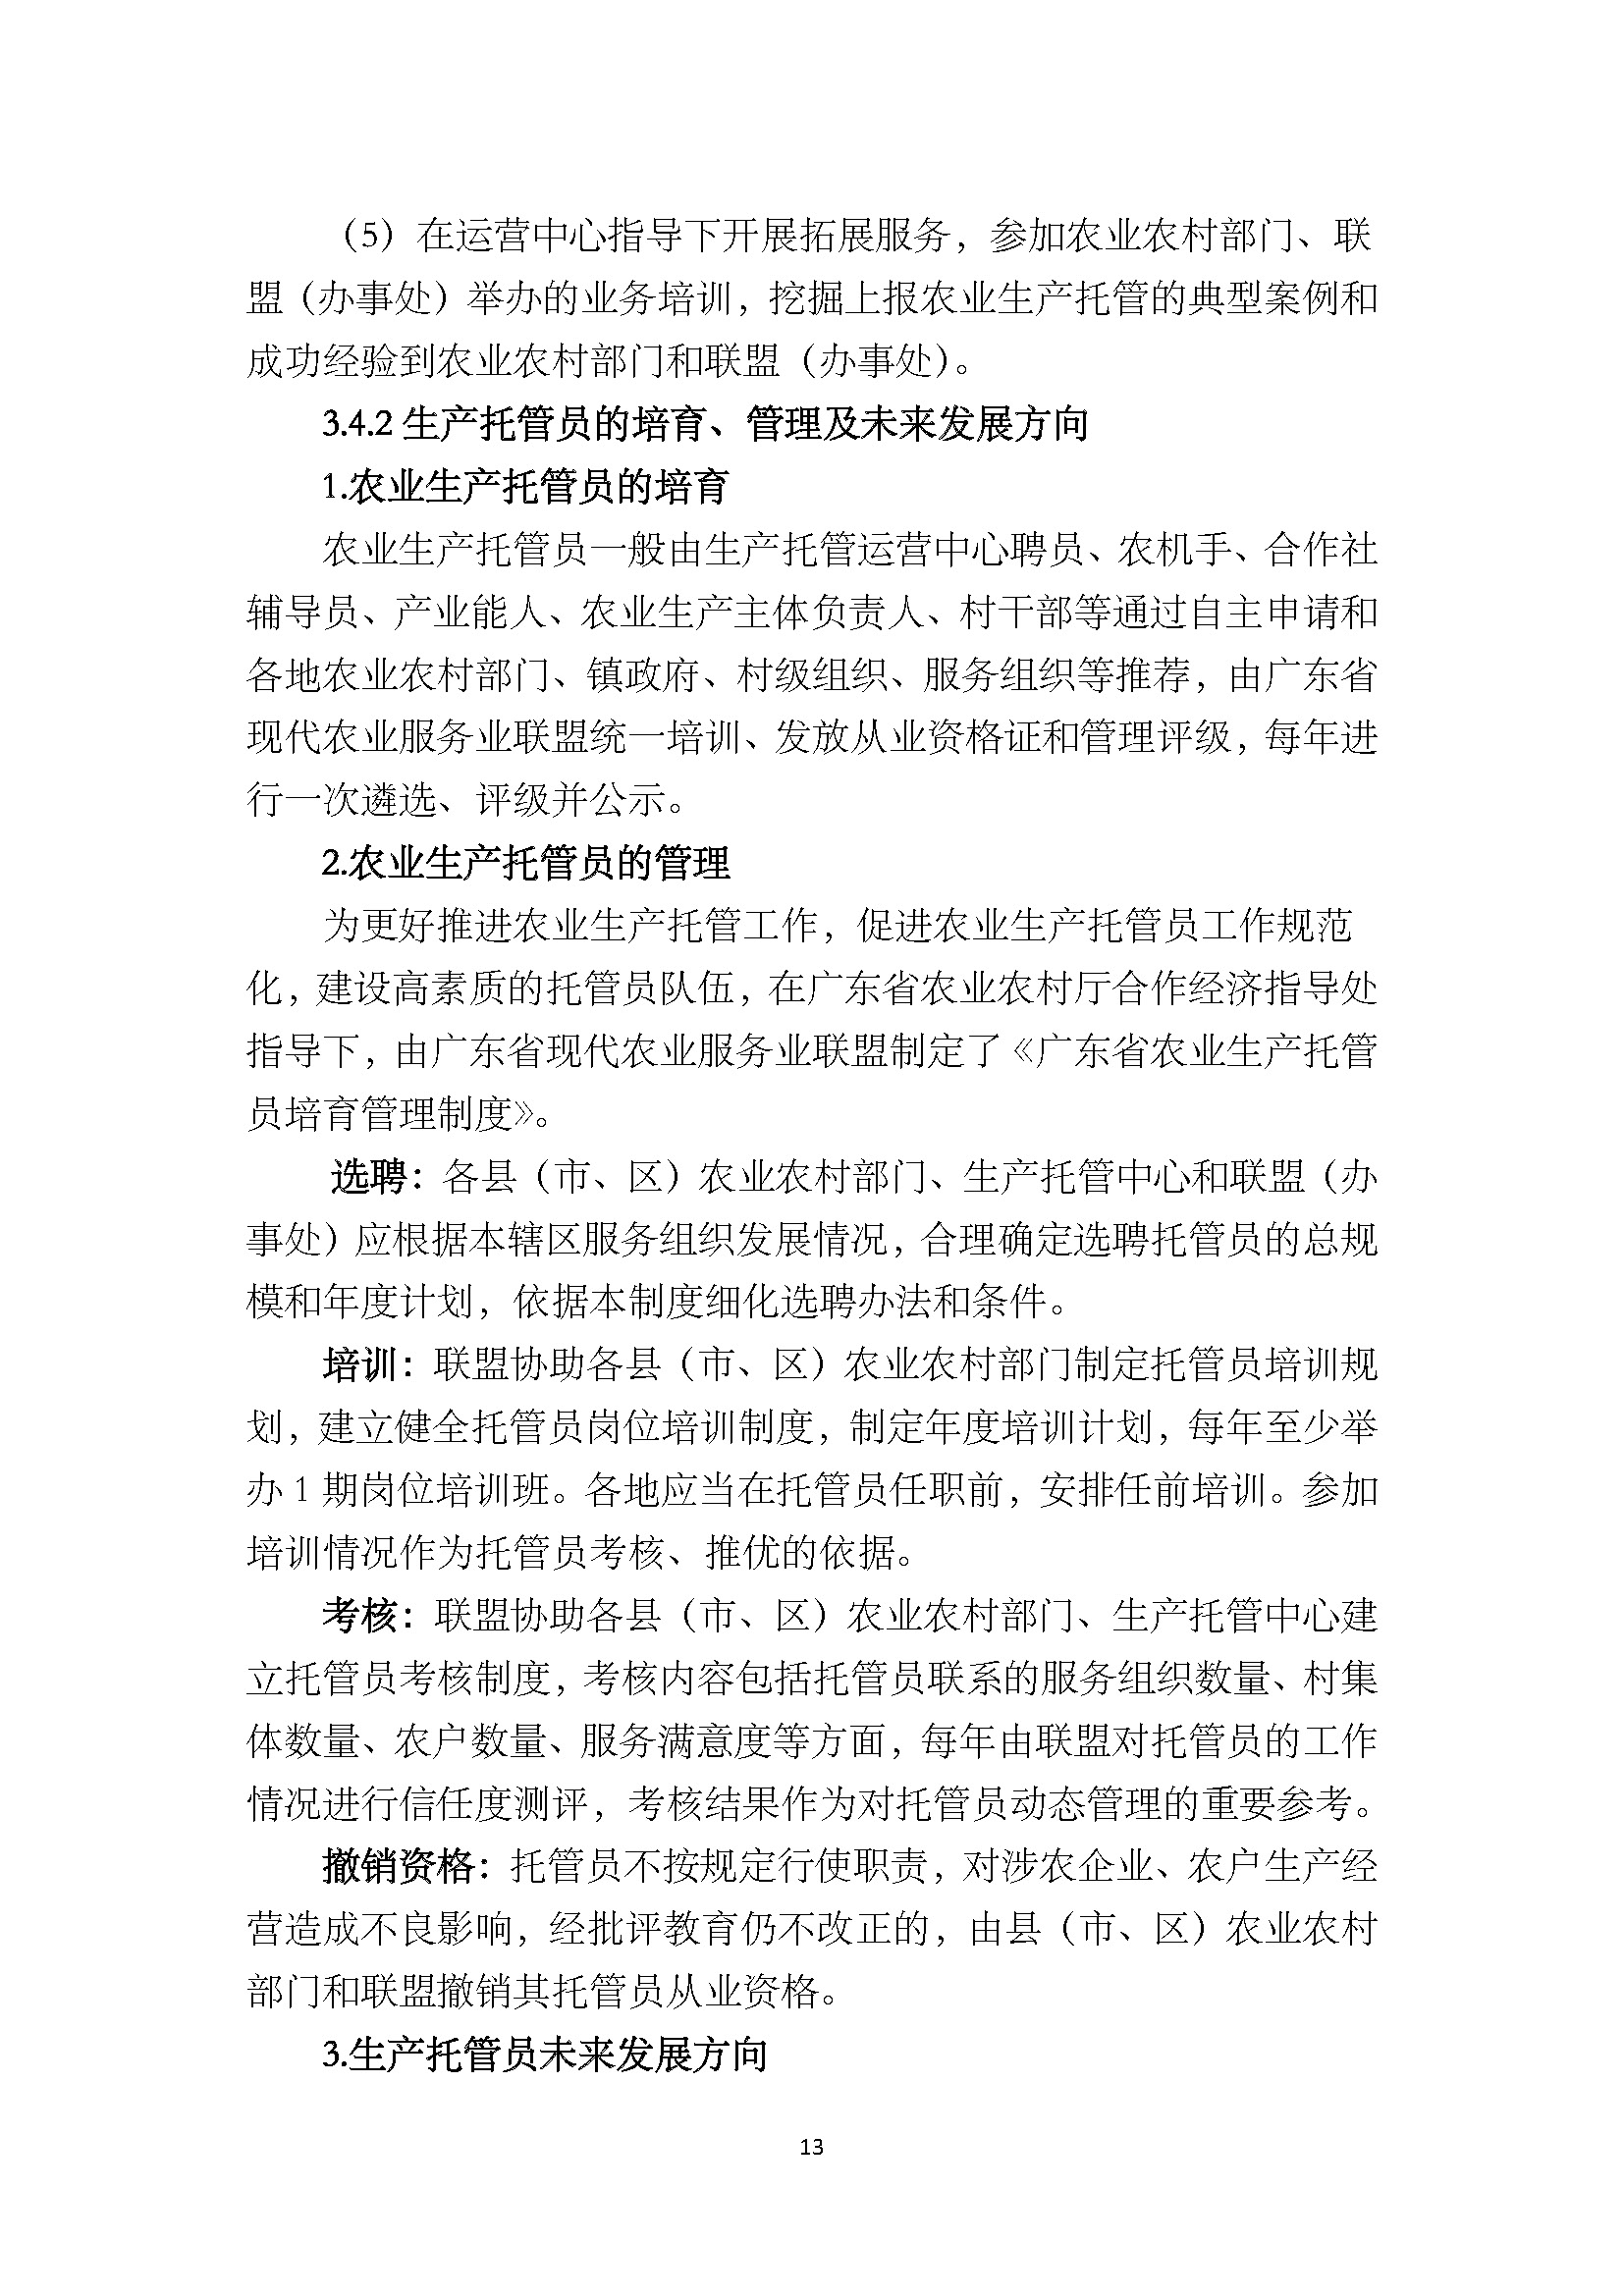 1.广东省农业生产托管服务工作手册_页面_15.jpg